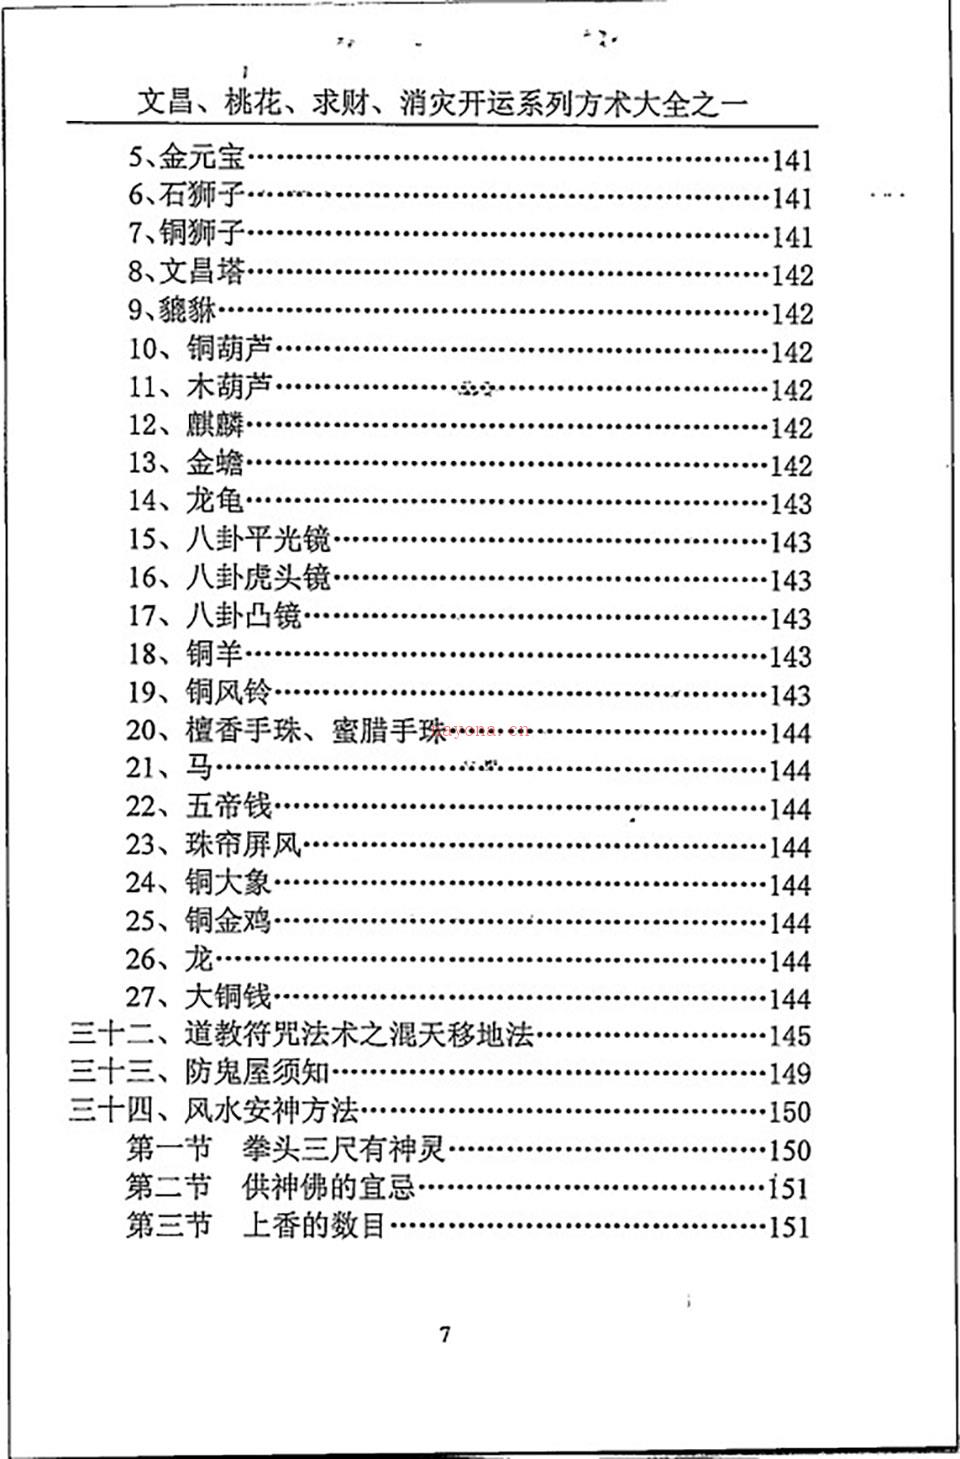 汤细加《消灾解难、改运方术汇编》.pdf 百度网盘资源